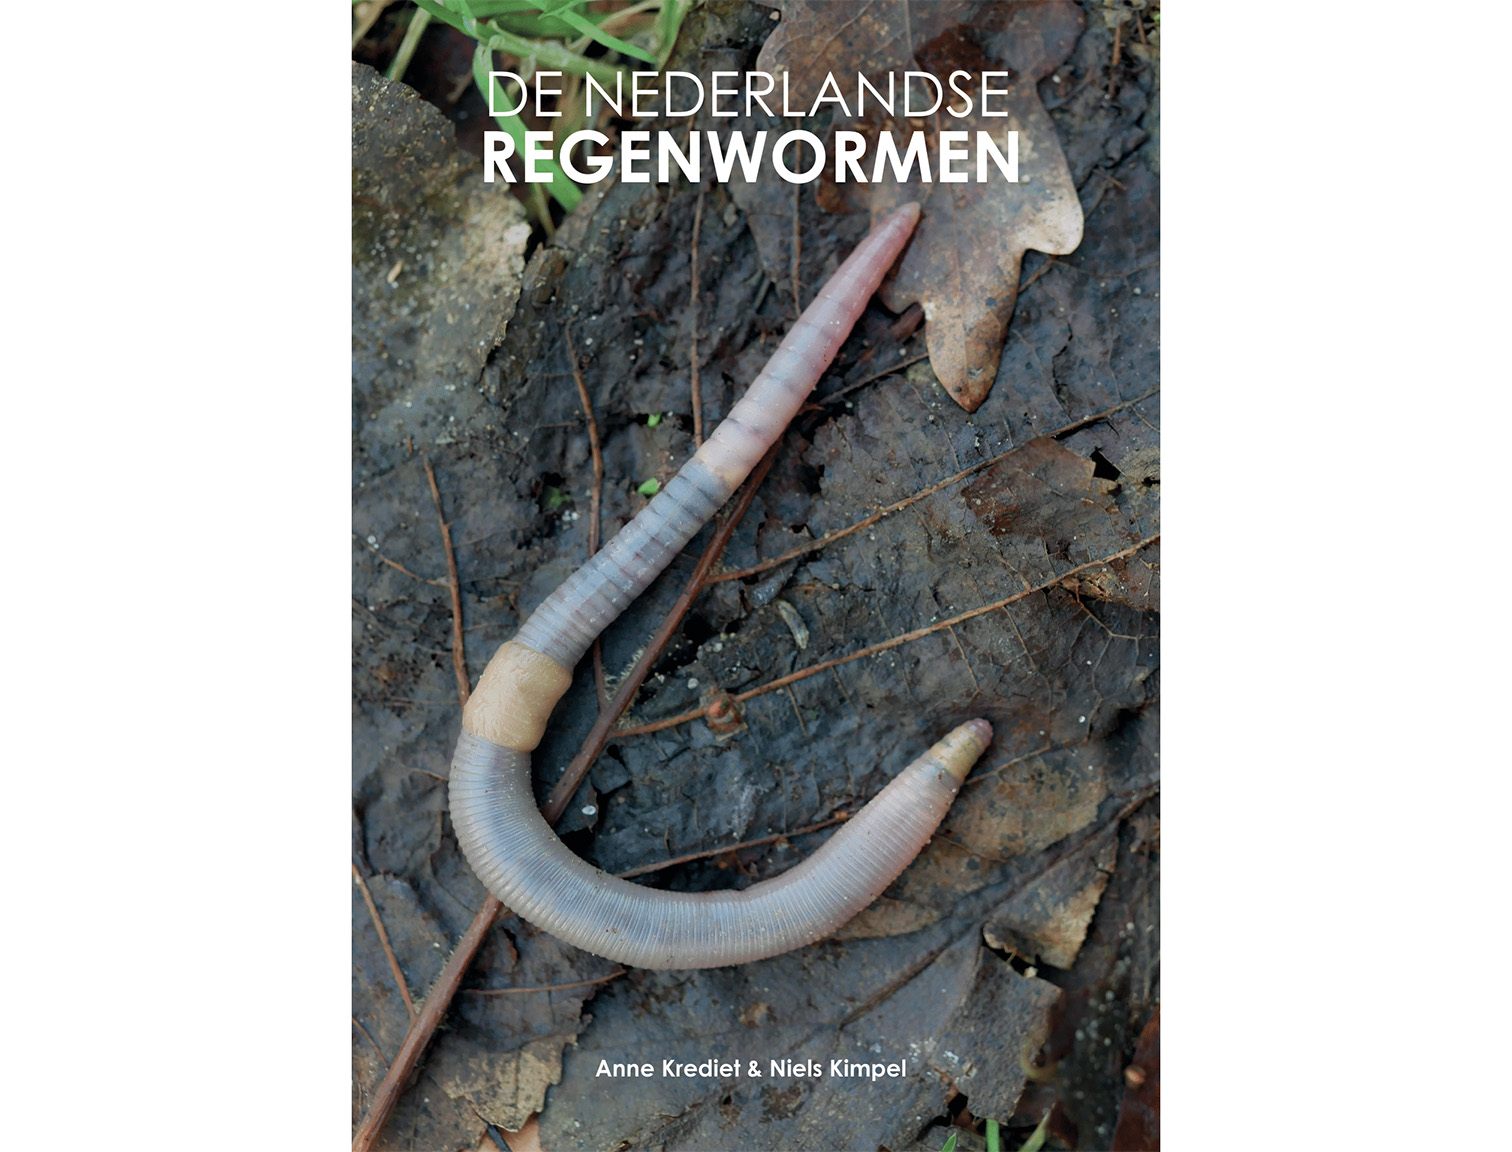 De-NL-Regenwormen-2-cover-HK-afloop-1